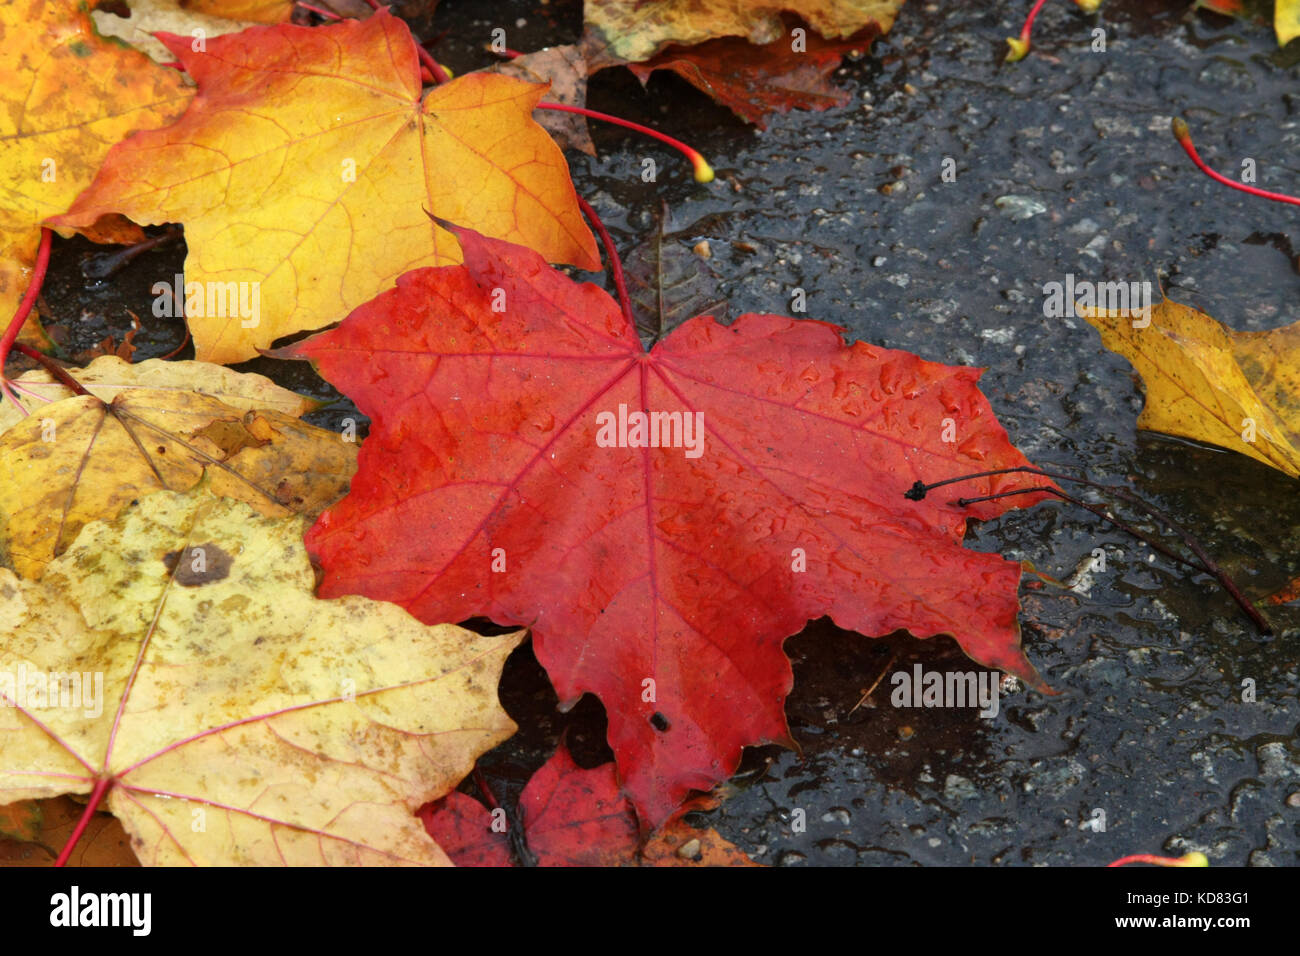 Herbstliche Stimmung. Helles ahorn Blätter auf dem Pflaster liegen. die Blätter fallen. Stockfoto